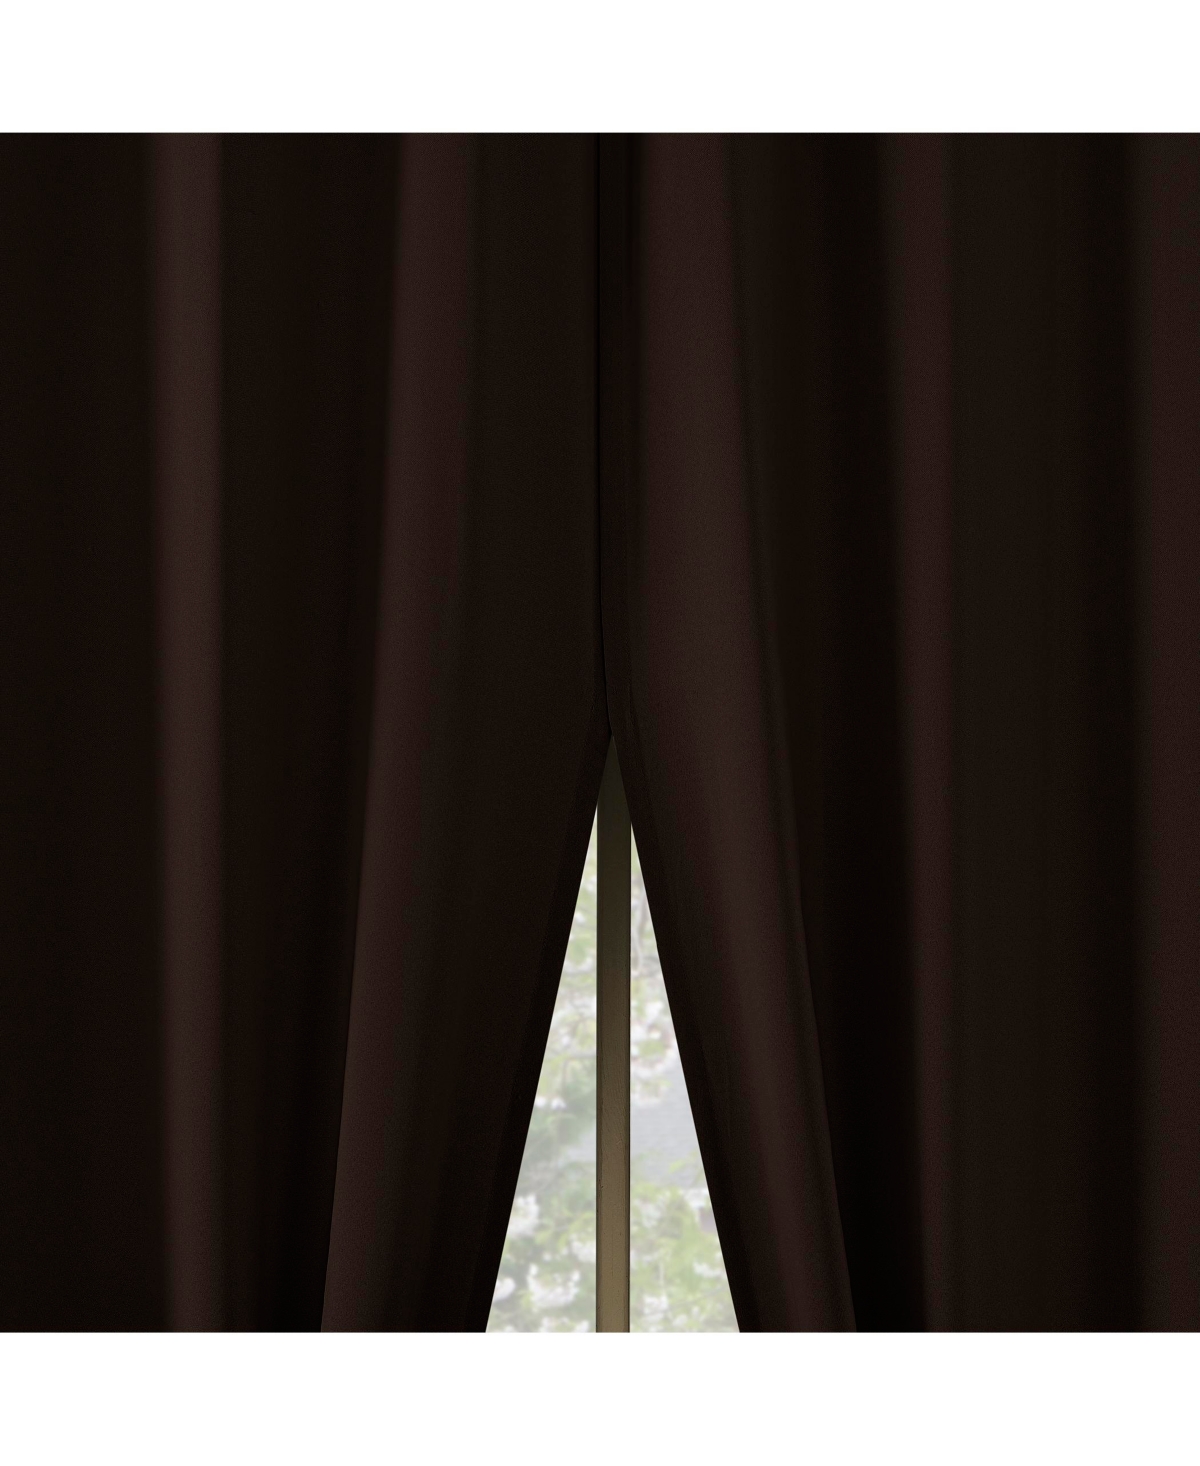 Brandon Magnetic Closure Room Darkening Grommet Curtain Panel Pair - Chocolate brown